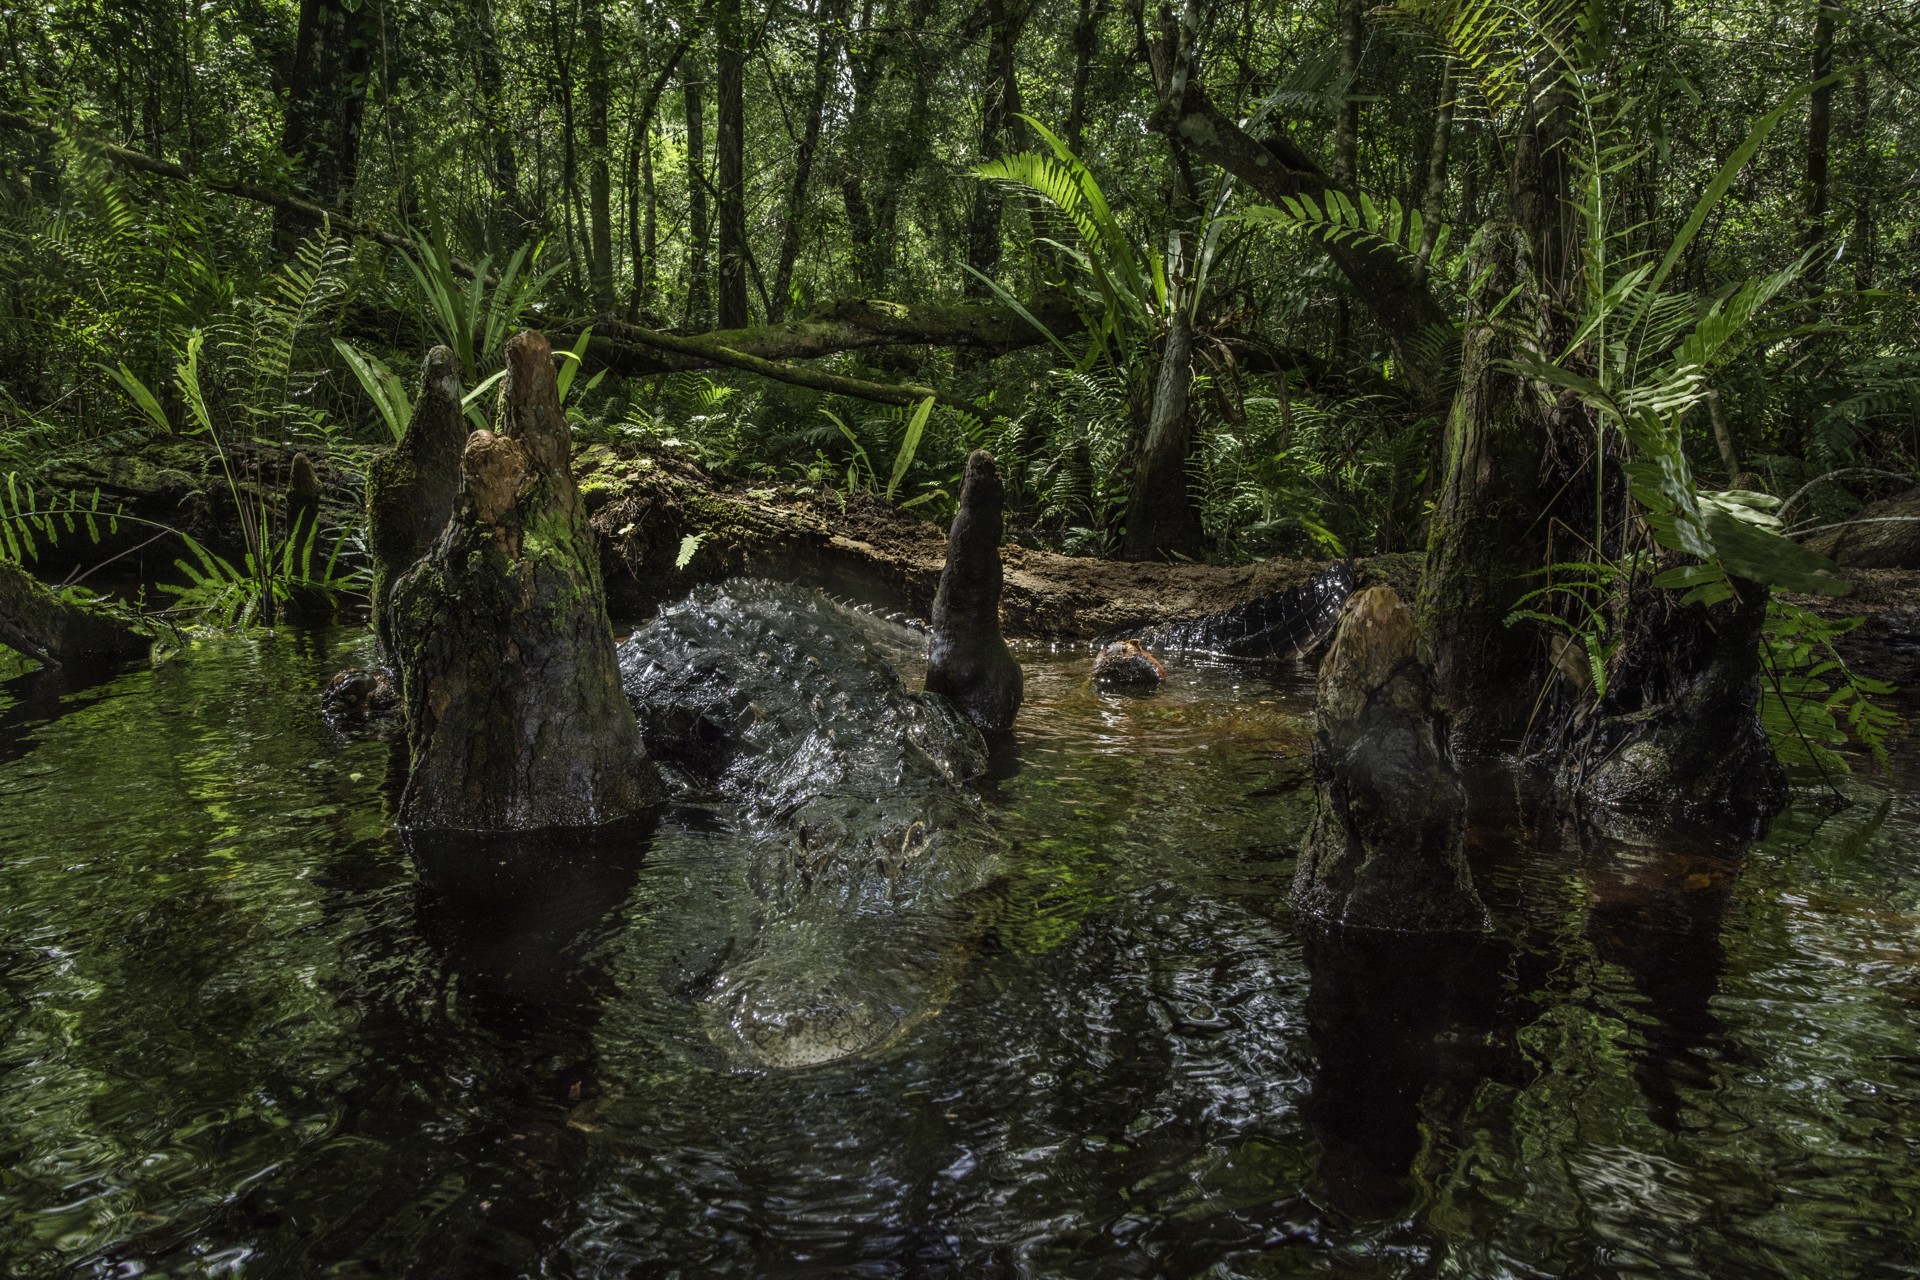 Swamp Gator by Carlton Ward Photography